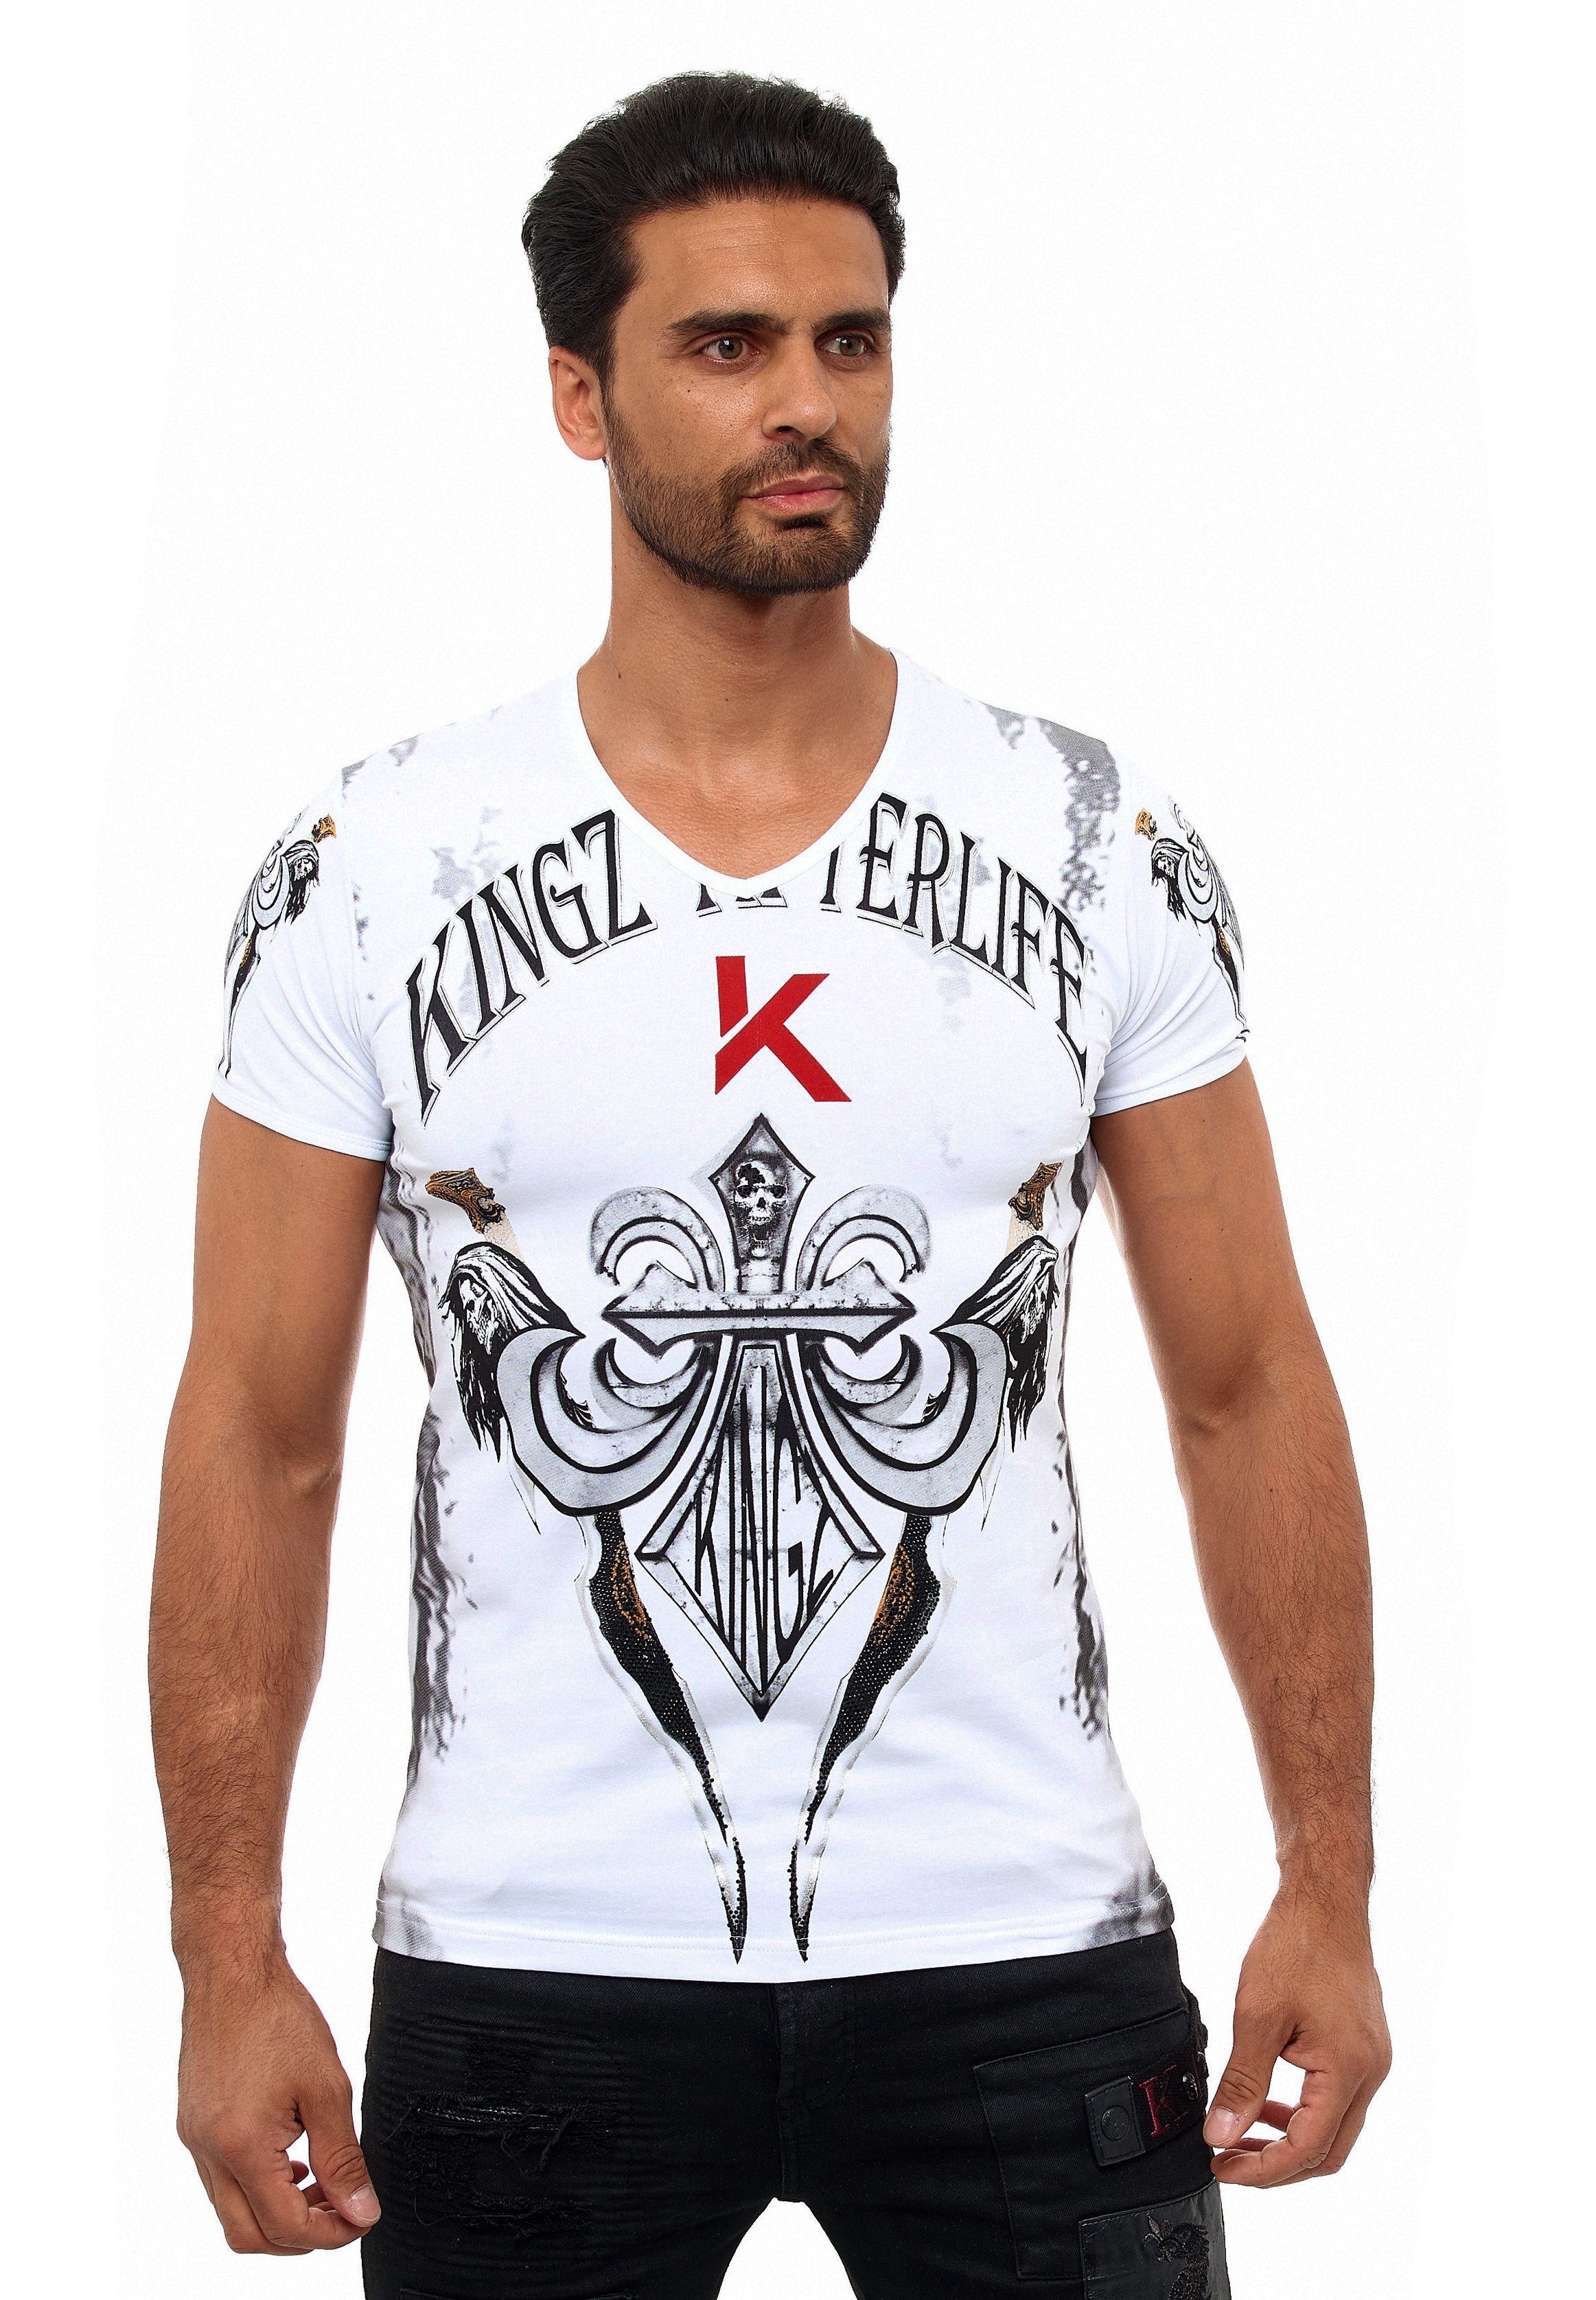 schönem KINGZ Lilien-Motiv T-Shirt mit weiß-silberfarben